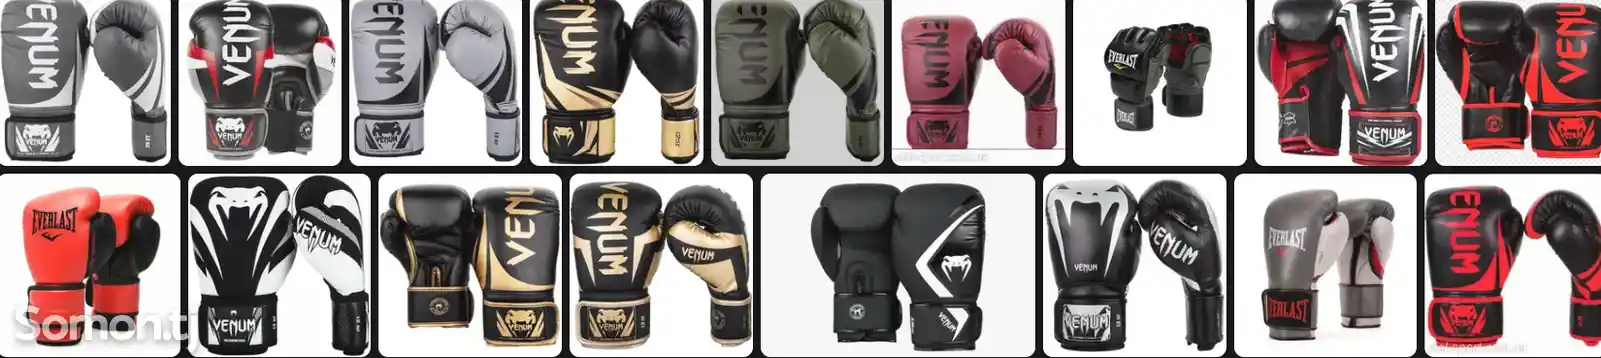 Боксерские перчатки-2